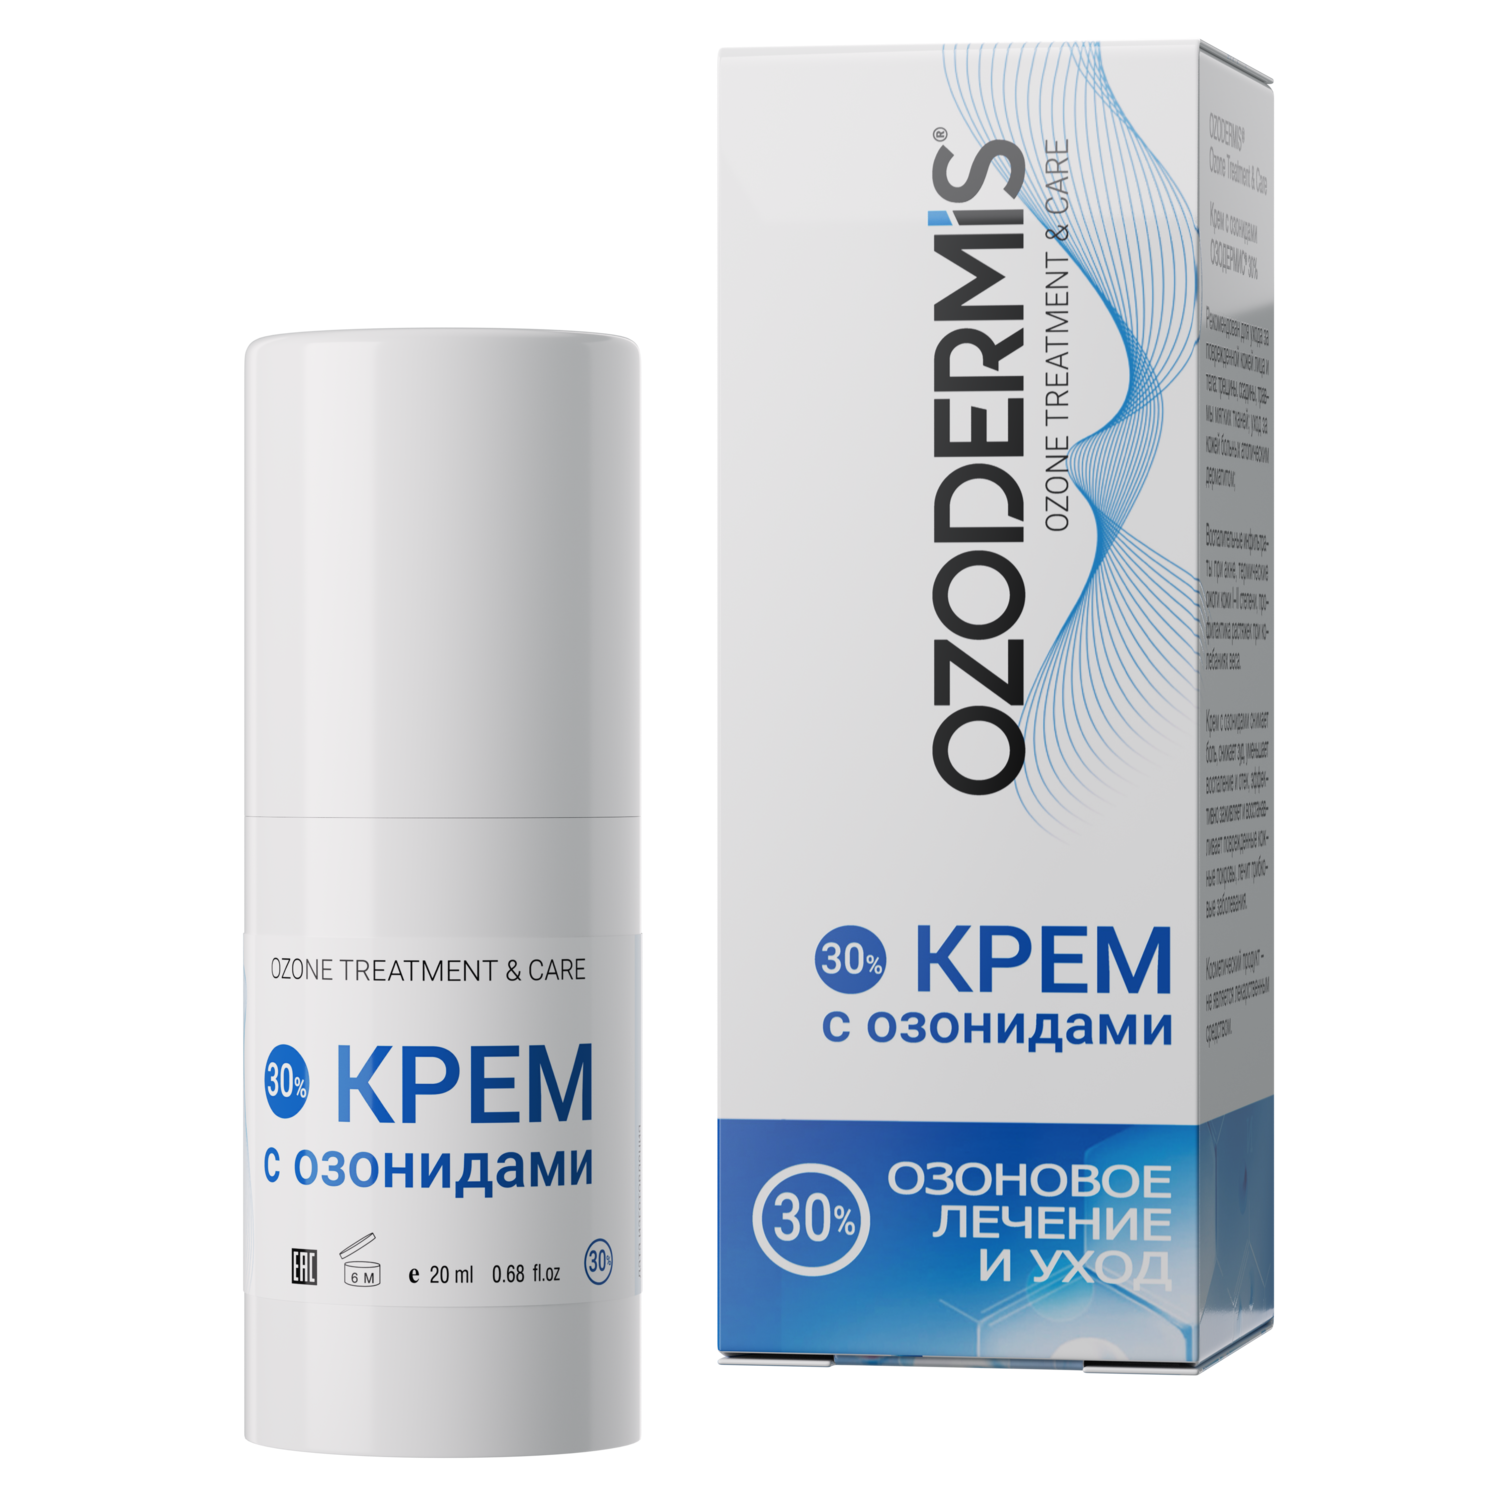 OZODERMIS ® Крем с озонидами 30%. Озоновое лечение и озоновый уход (вакуум.флакон 20 мл.)